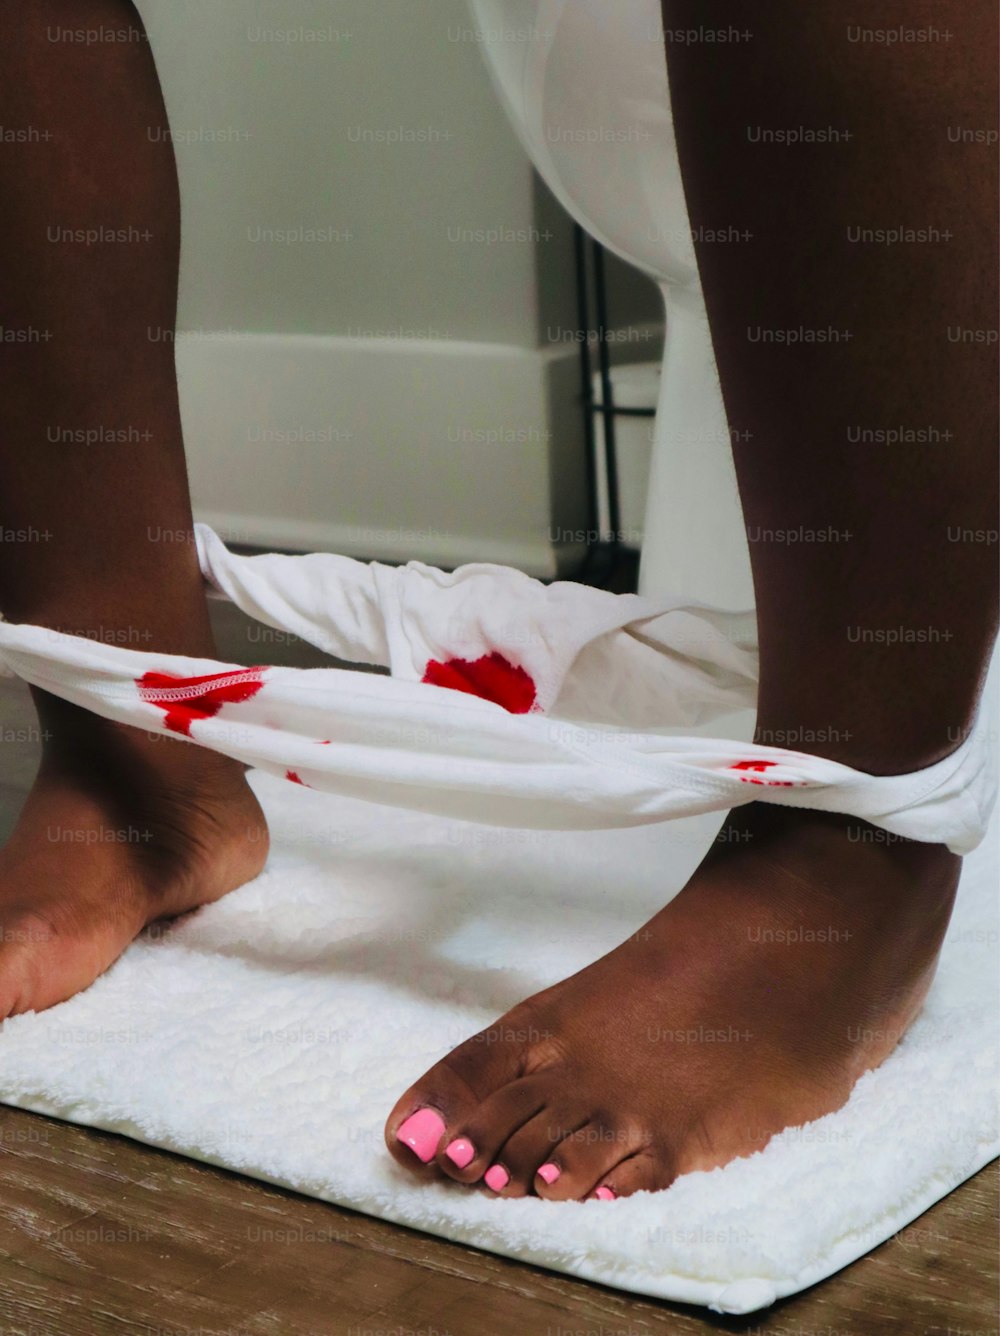 una persona con sangre en los pies sobre una toalla